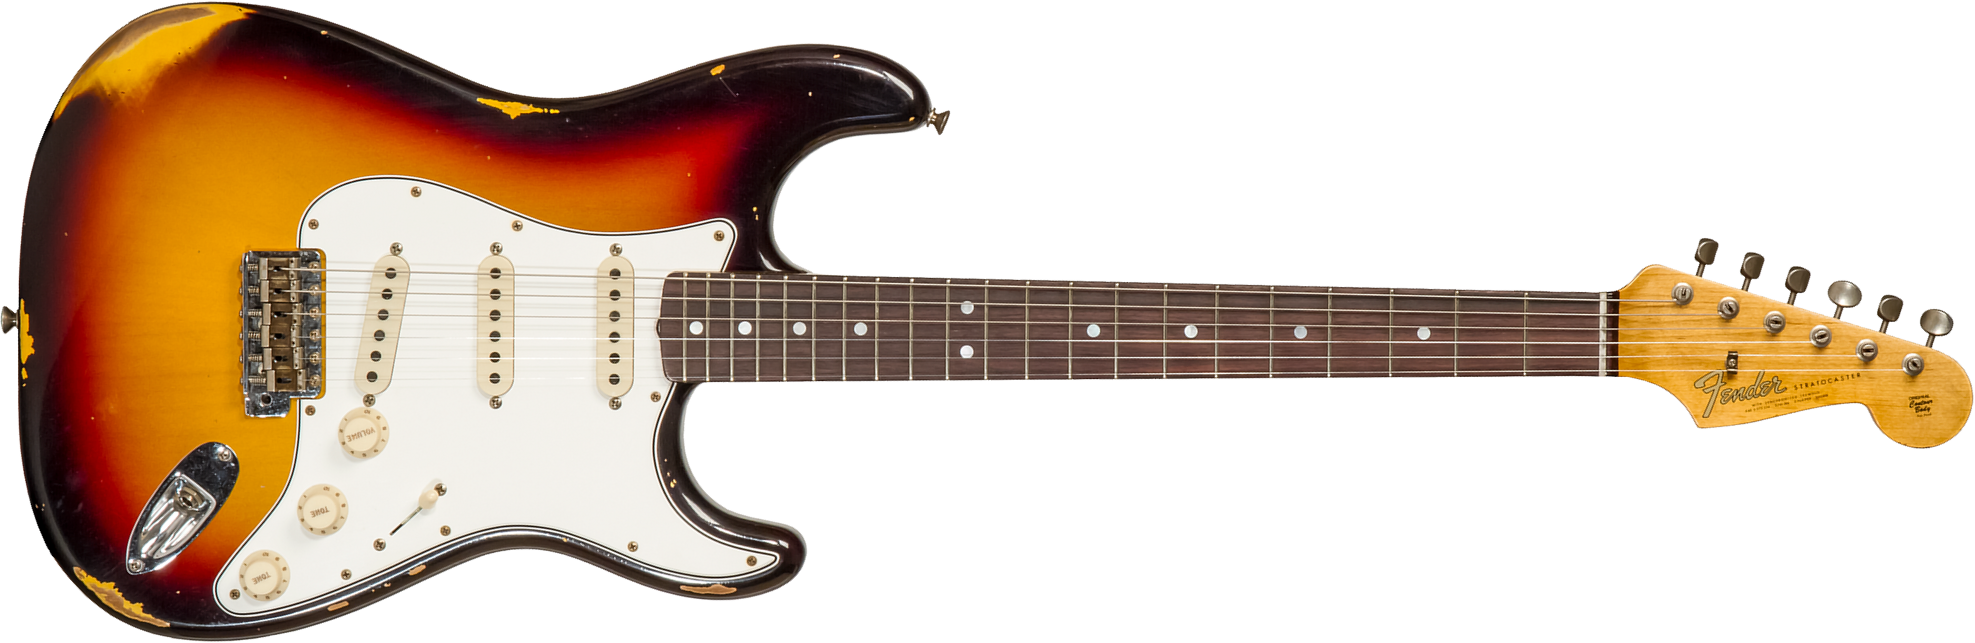 Fender Custom Shop Strat Late 1964 3s Trem Rw #cz569925 - Relic Target 3-color Sunburst - Guitare Électrique Forme Str - Main picture